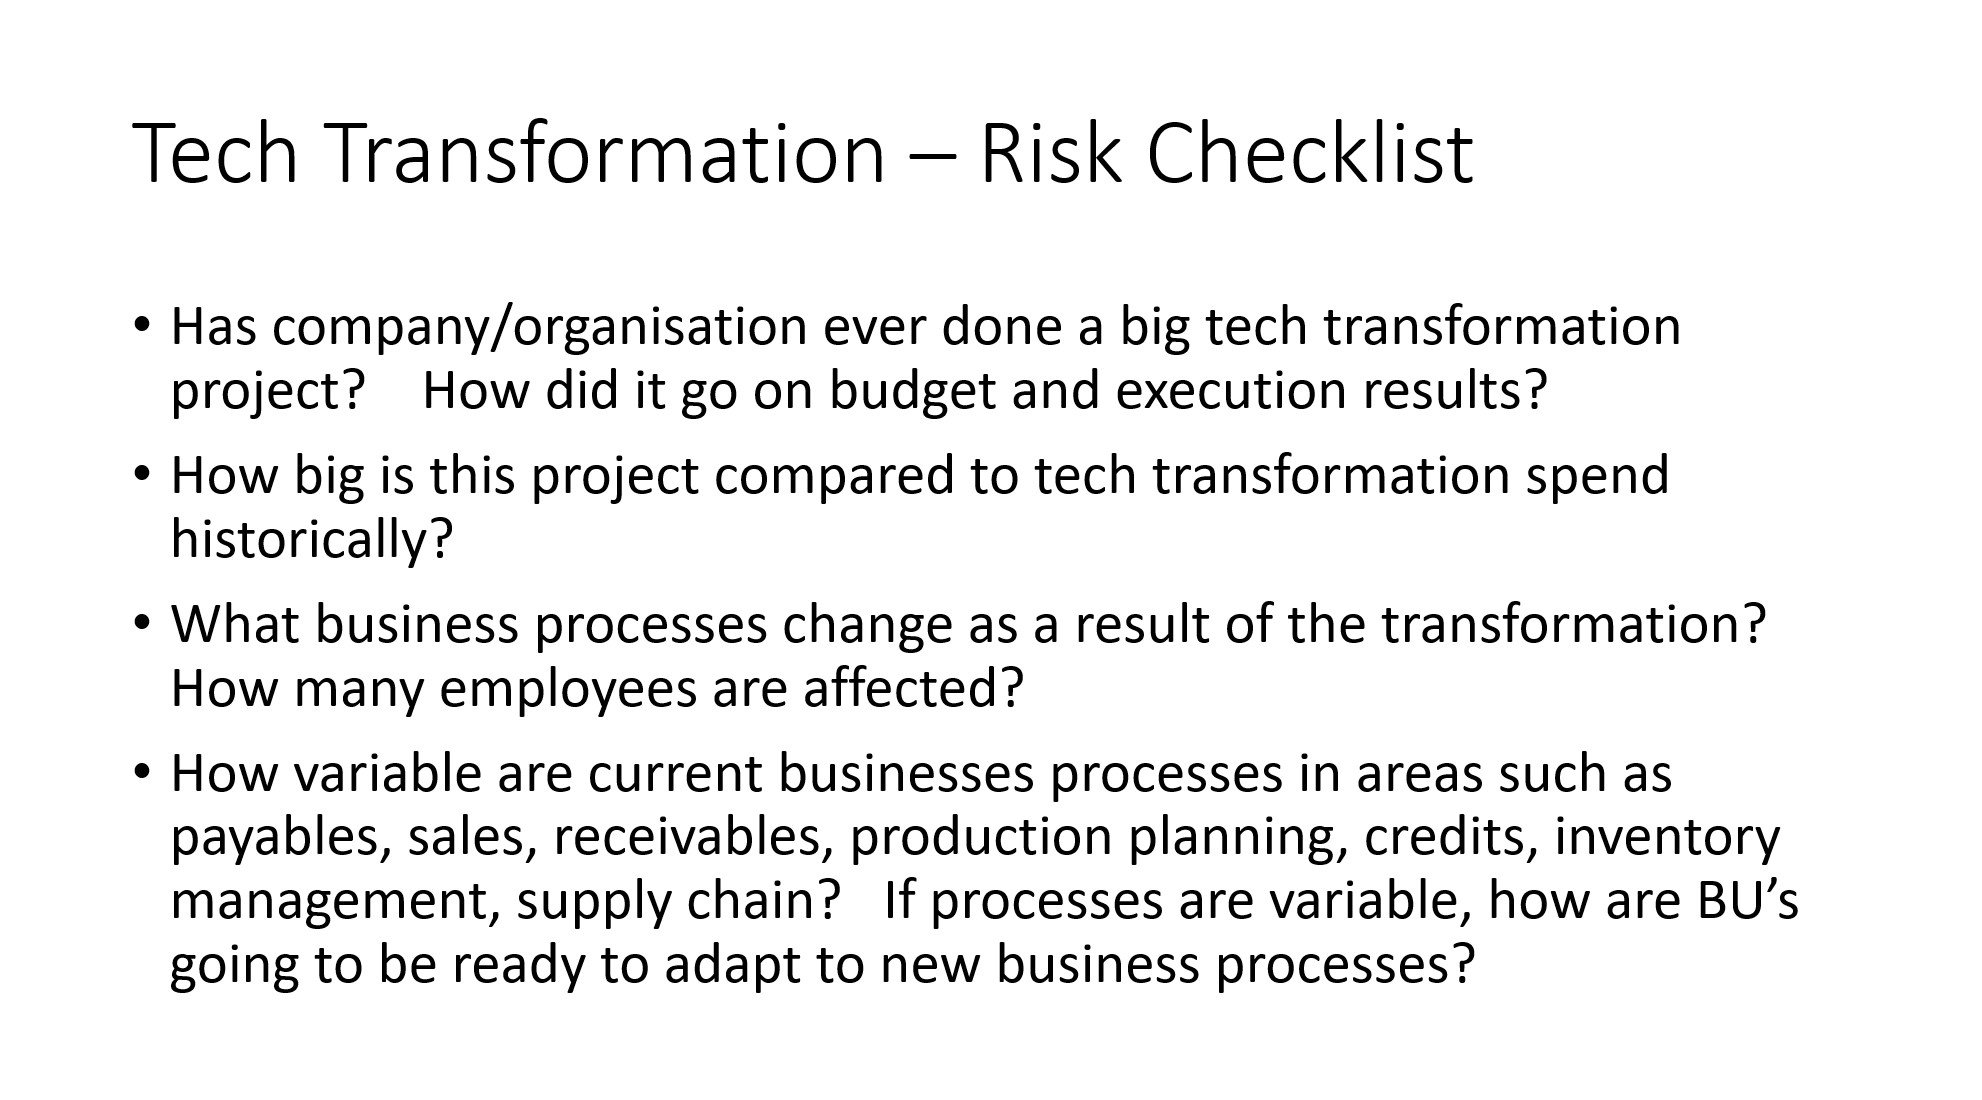 Tech Transformation - Risk Checklist 1.jpg